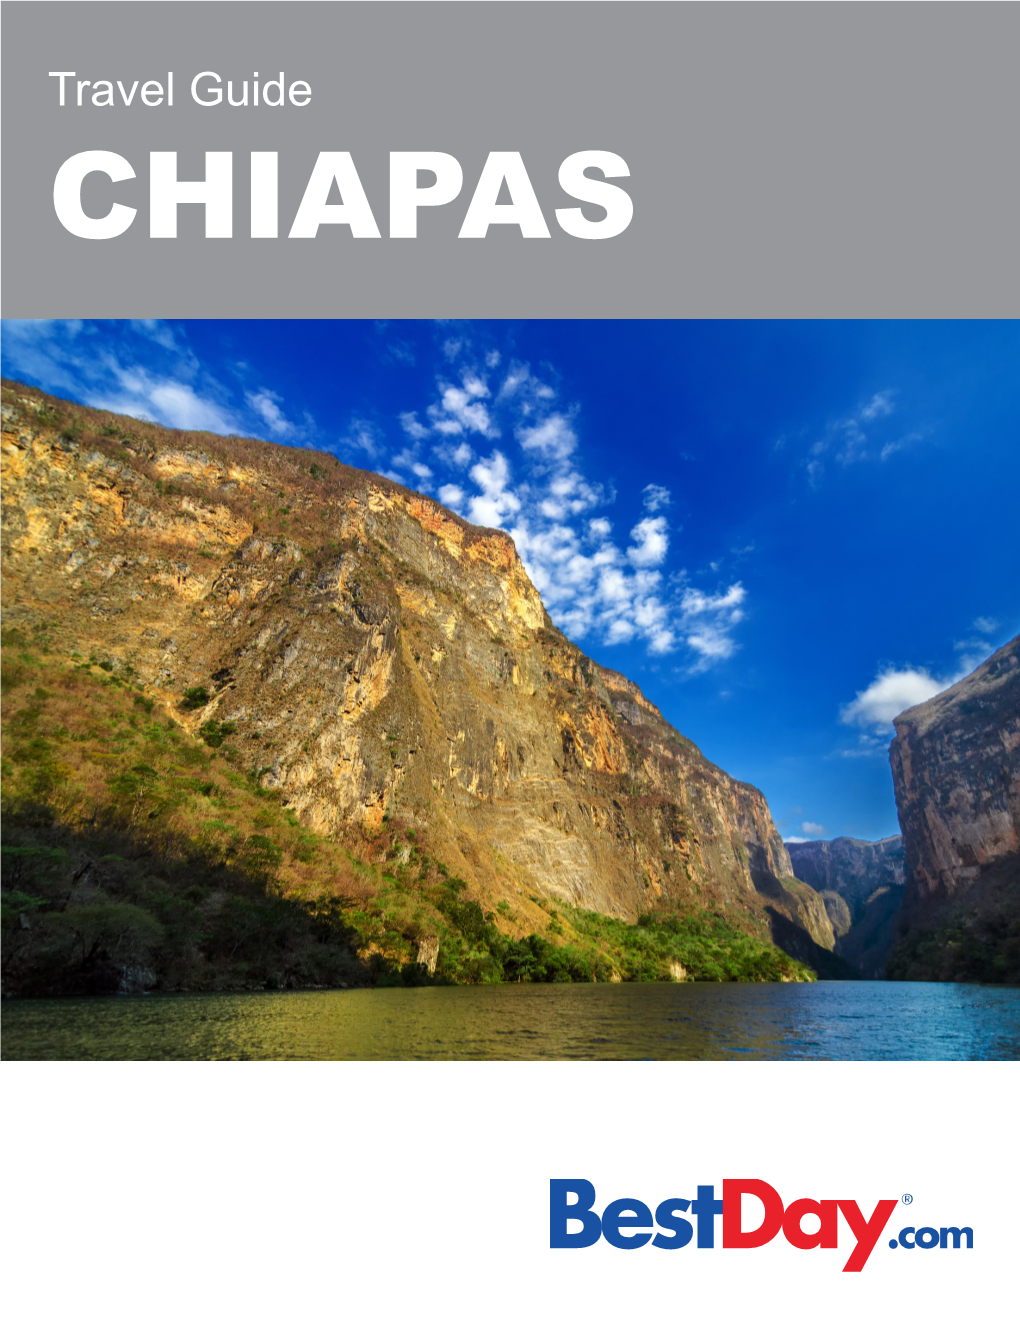 Travel Guide CHIAPAS Contetns